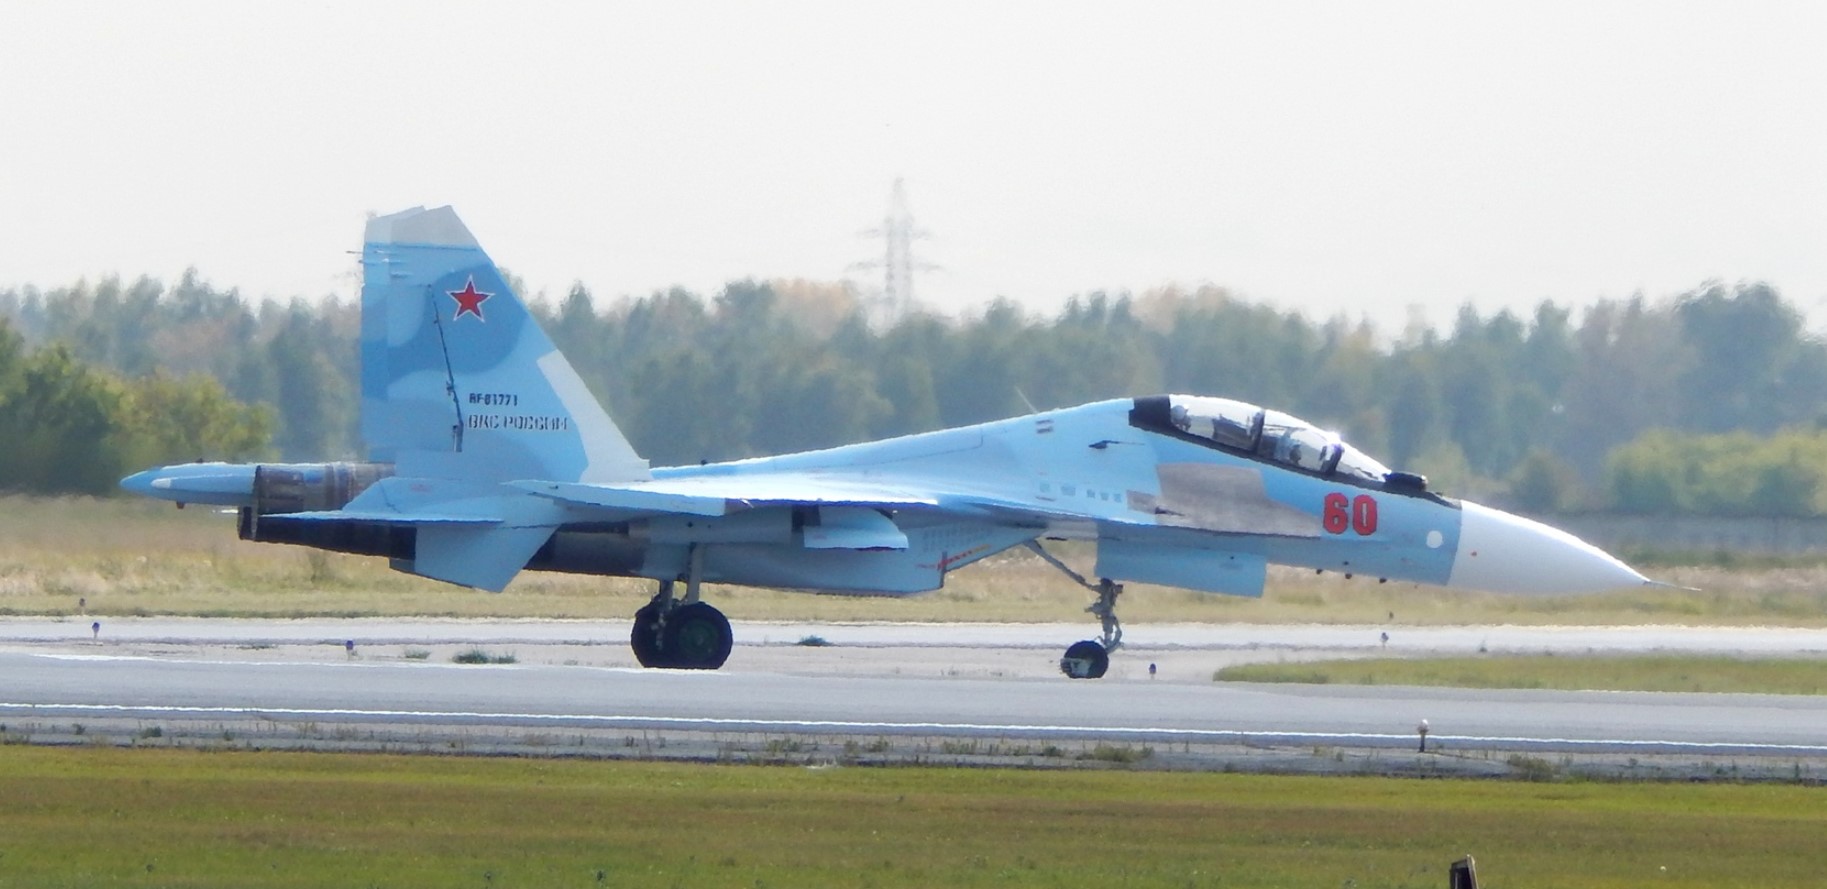 Російський винищувач Су-30СМ з номером RF81771. 2018 рік. Росія. Фото: ЗМІ РФ